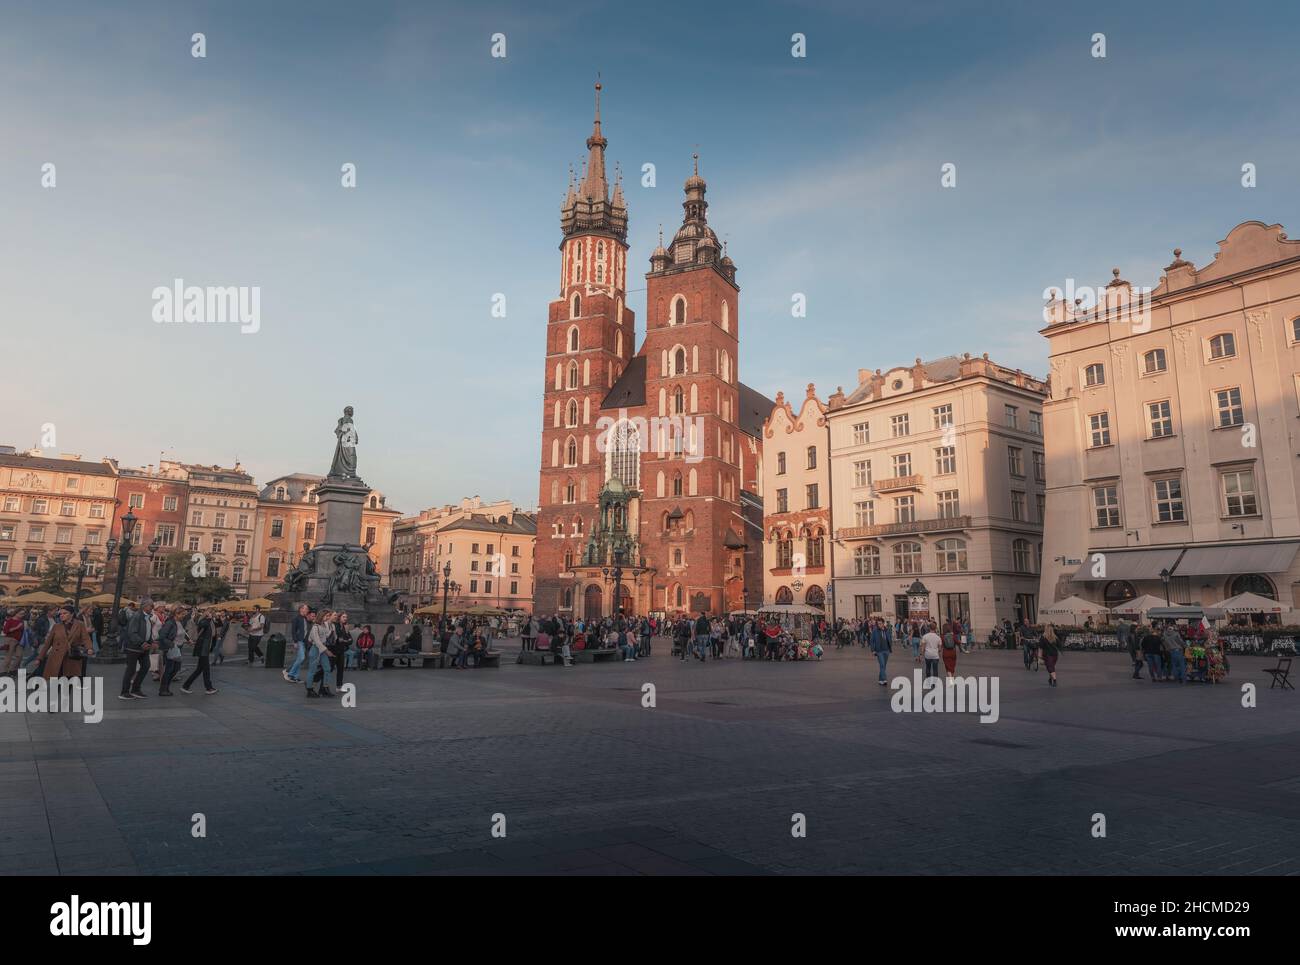 Main Market Square and St. Mary's Basilica - Krakow, Poland Stock Photo